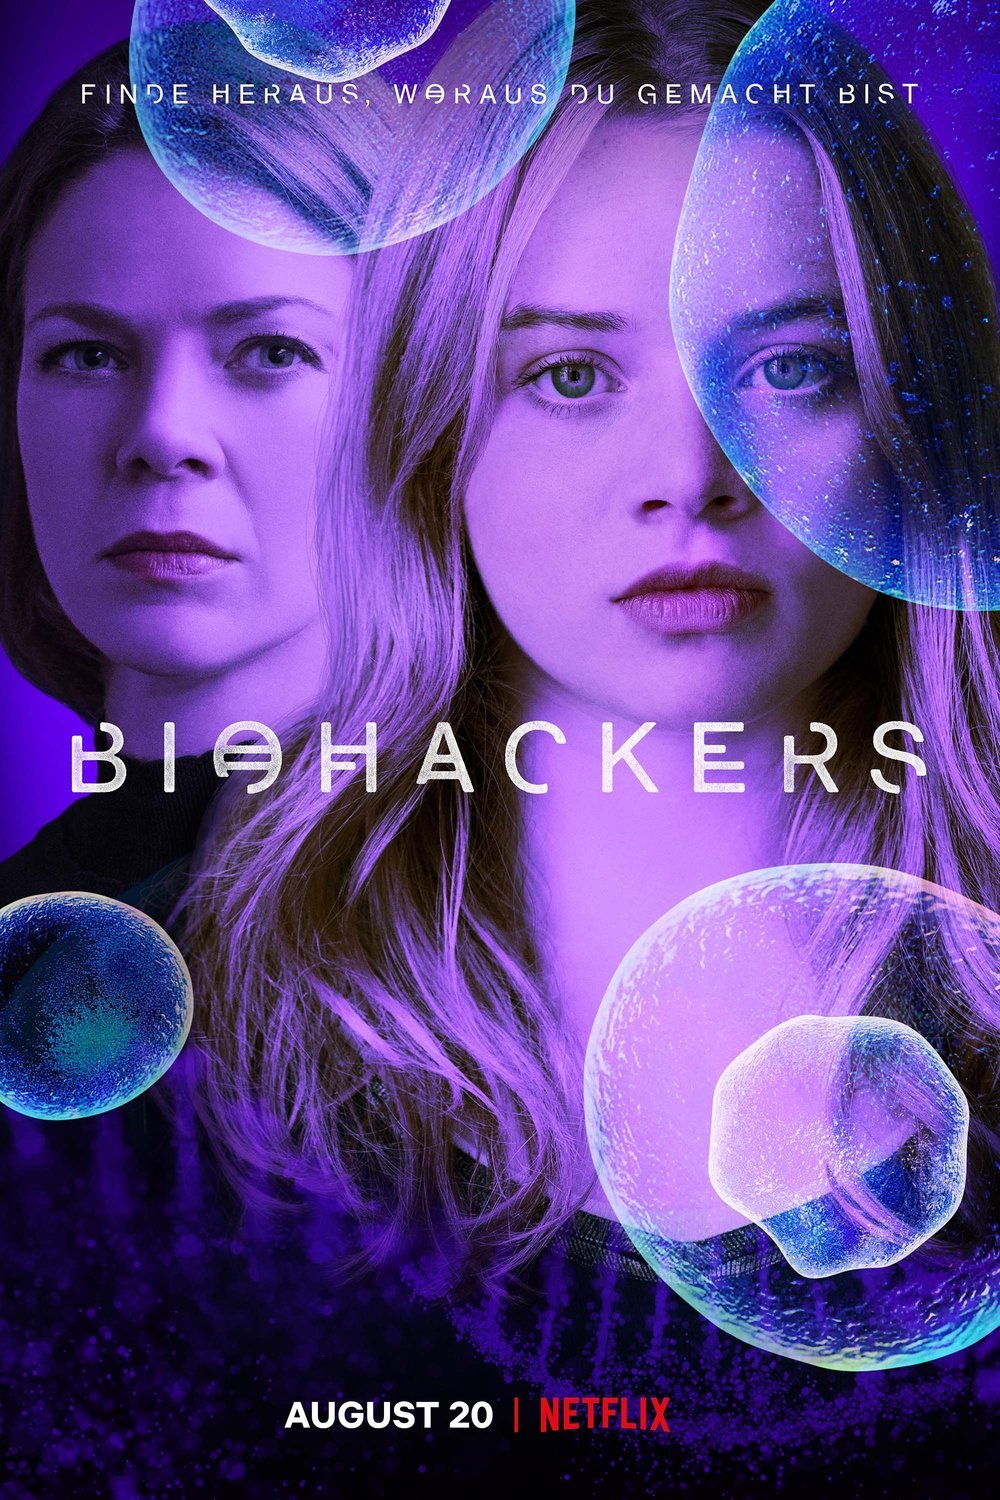 L'affiche originale du film Biohackers en allemand